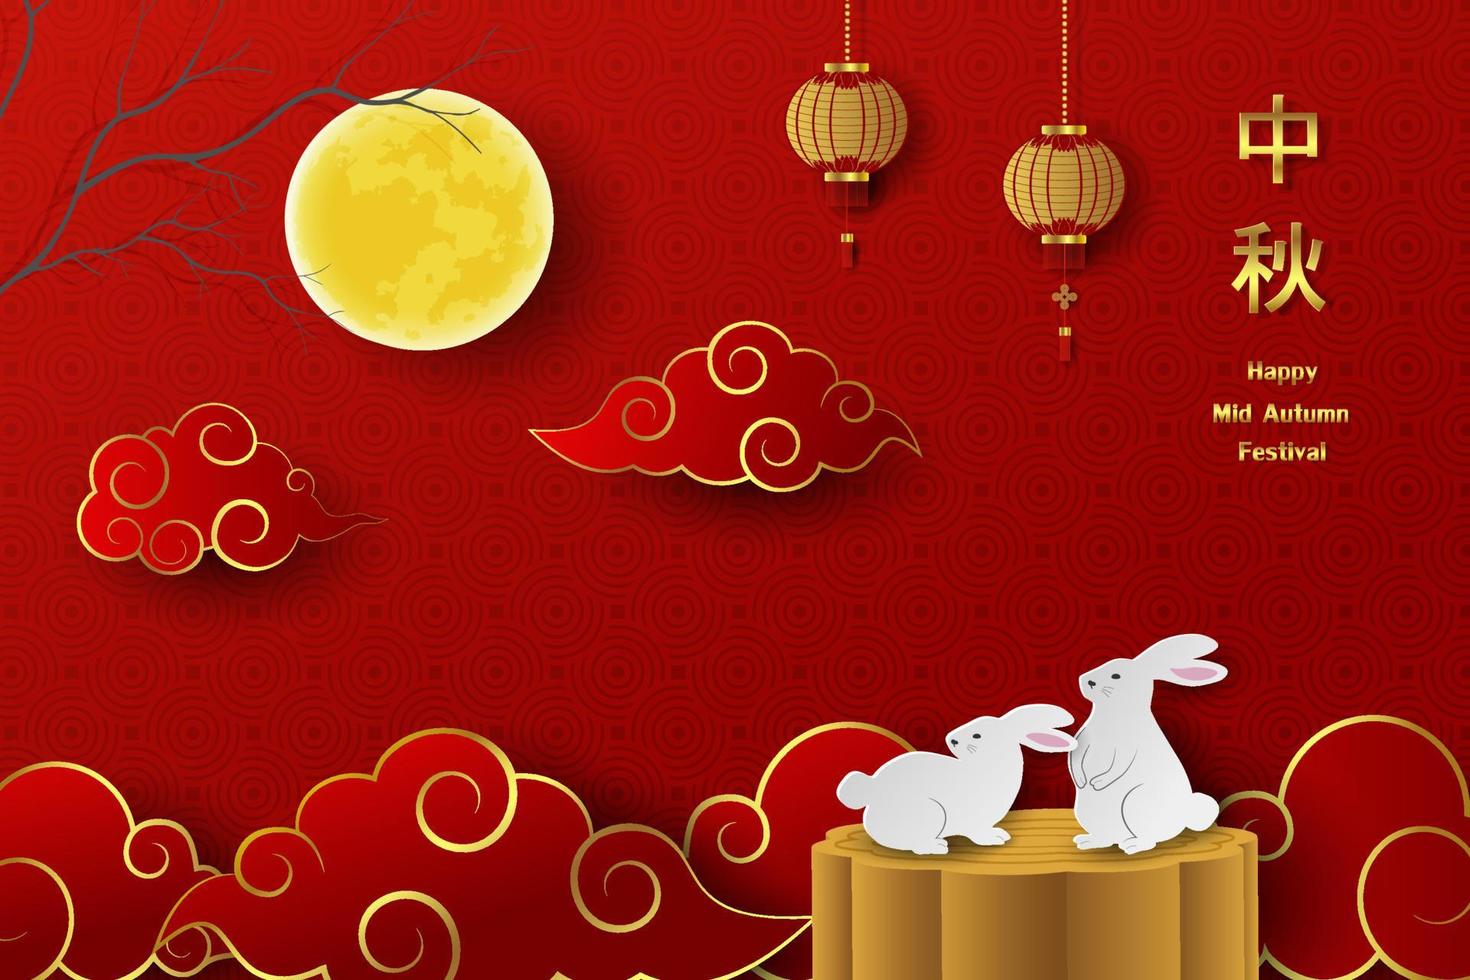 festival de la mi automne sur fond rouge avec texte chinois, pleine lune, lanternes, nuage et lapins sur gâteau de lune vecteur